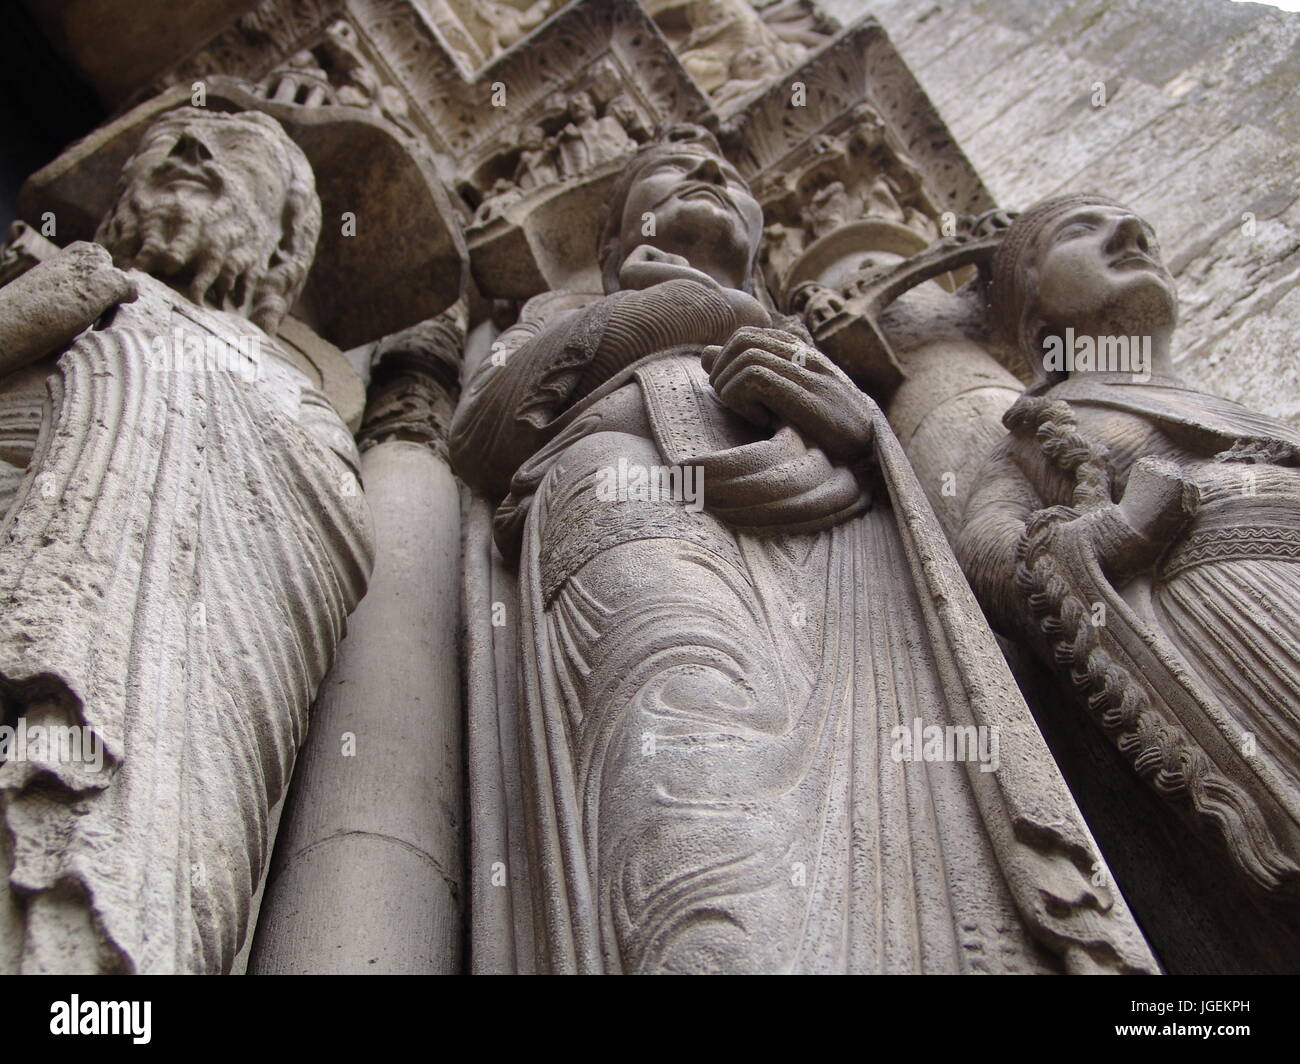 La cathédrale de Chartres France - DÉTAILS STATUES PORCHE PRINCIPAL - Gothique - Cathédrale gothique - NOTRE-DAME DE CHARTRES - PATRIMOINE DE L'UNESCO © Frédéric Beaumont Banque D'Images